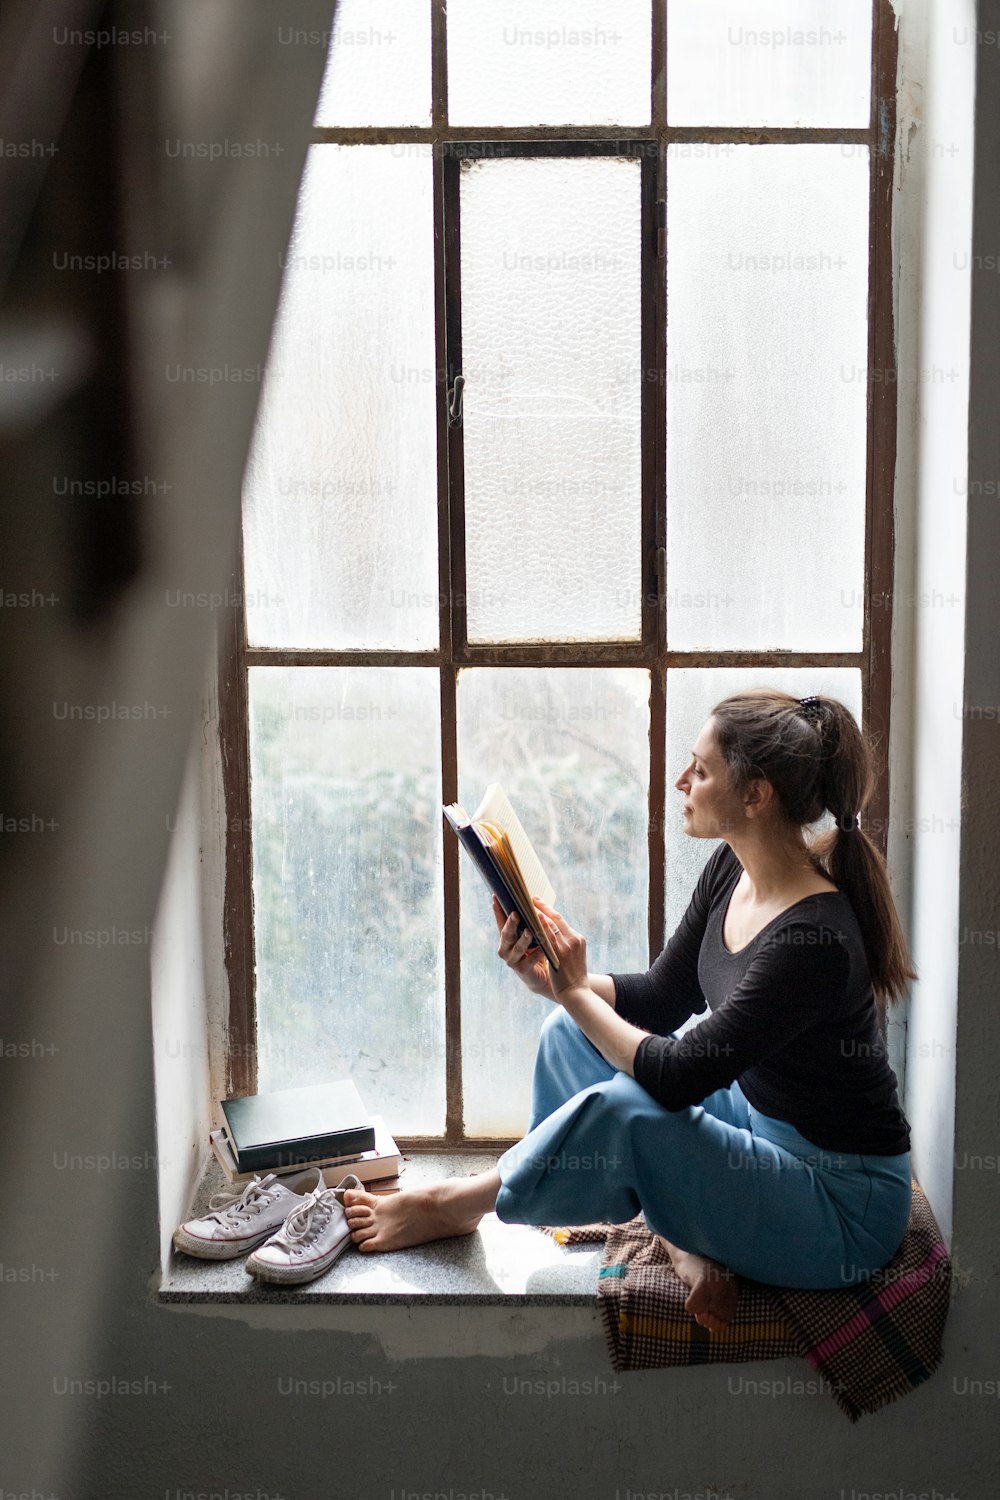 Portrait de femme heureuse assise sur le rebord d’une fenêtre vieille et sale, lisant un livre.